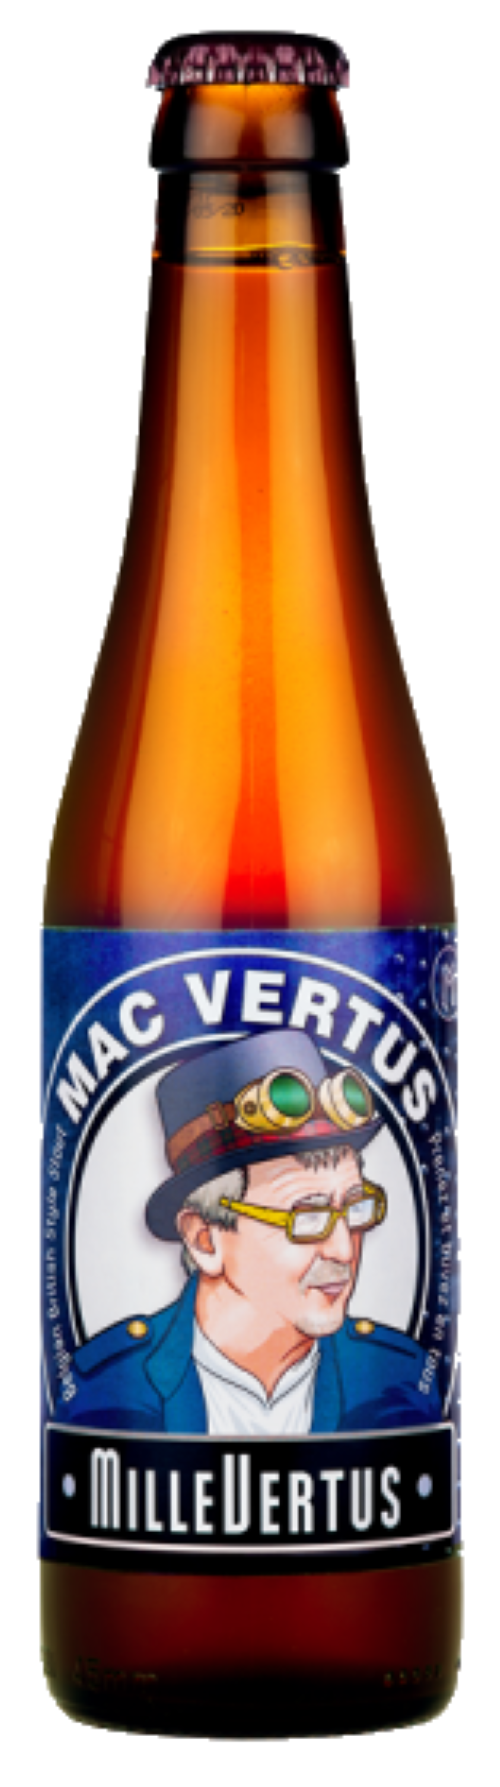 Produktbild von Brasserie Millevertus Mac Vertus